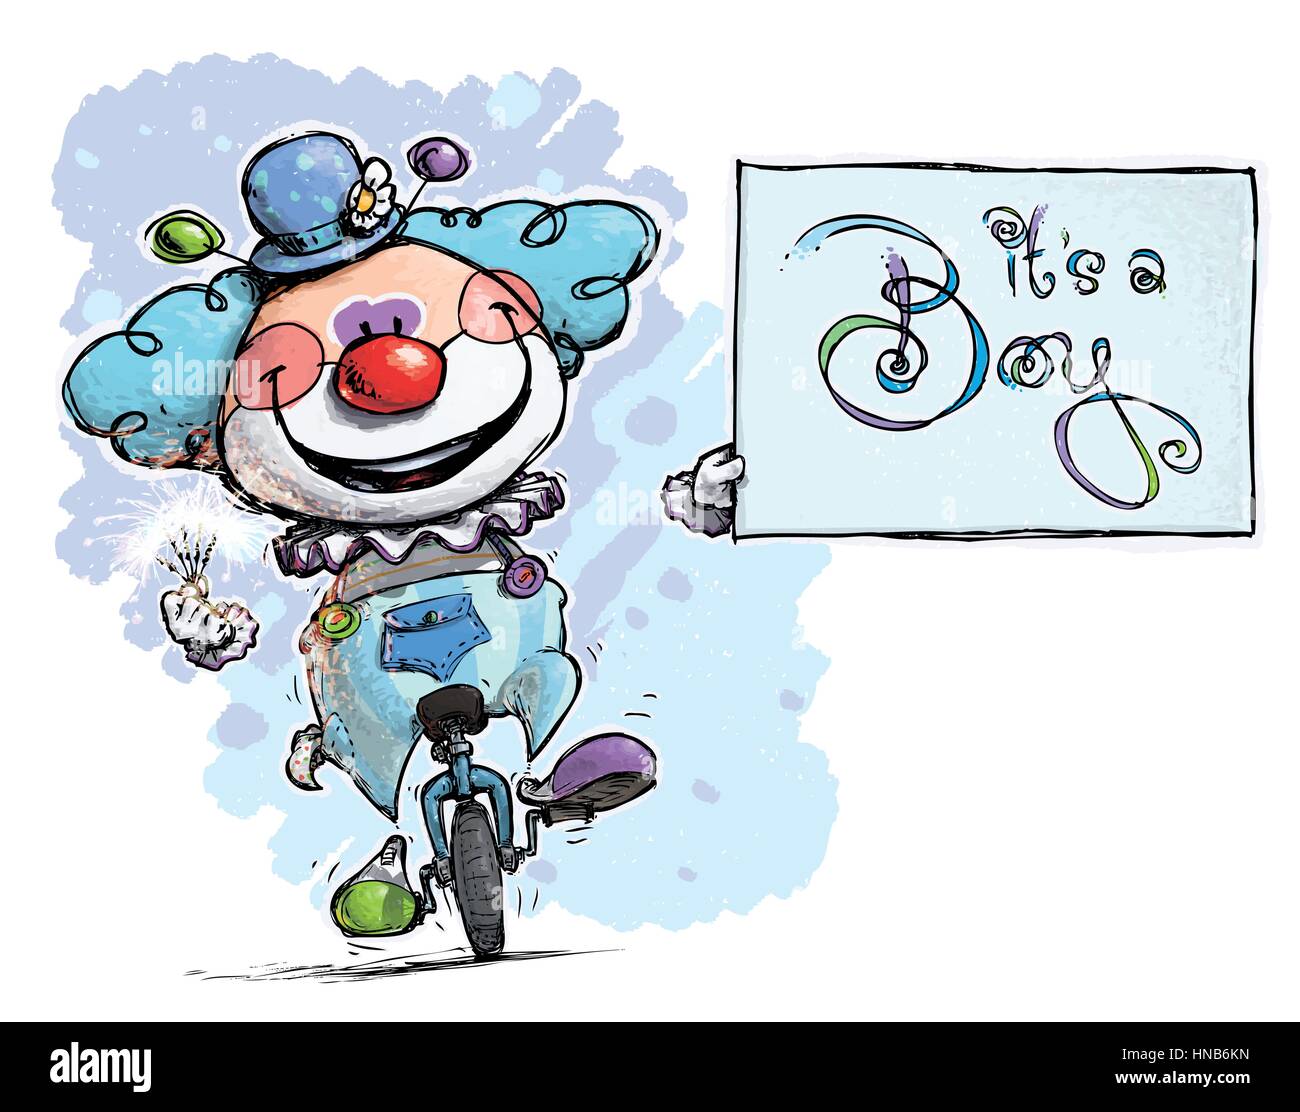 Cartoon/künstlerische Darstellung eines Clowns auf Unicle halten es ist eine junge Karte Stock Vektor